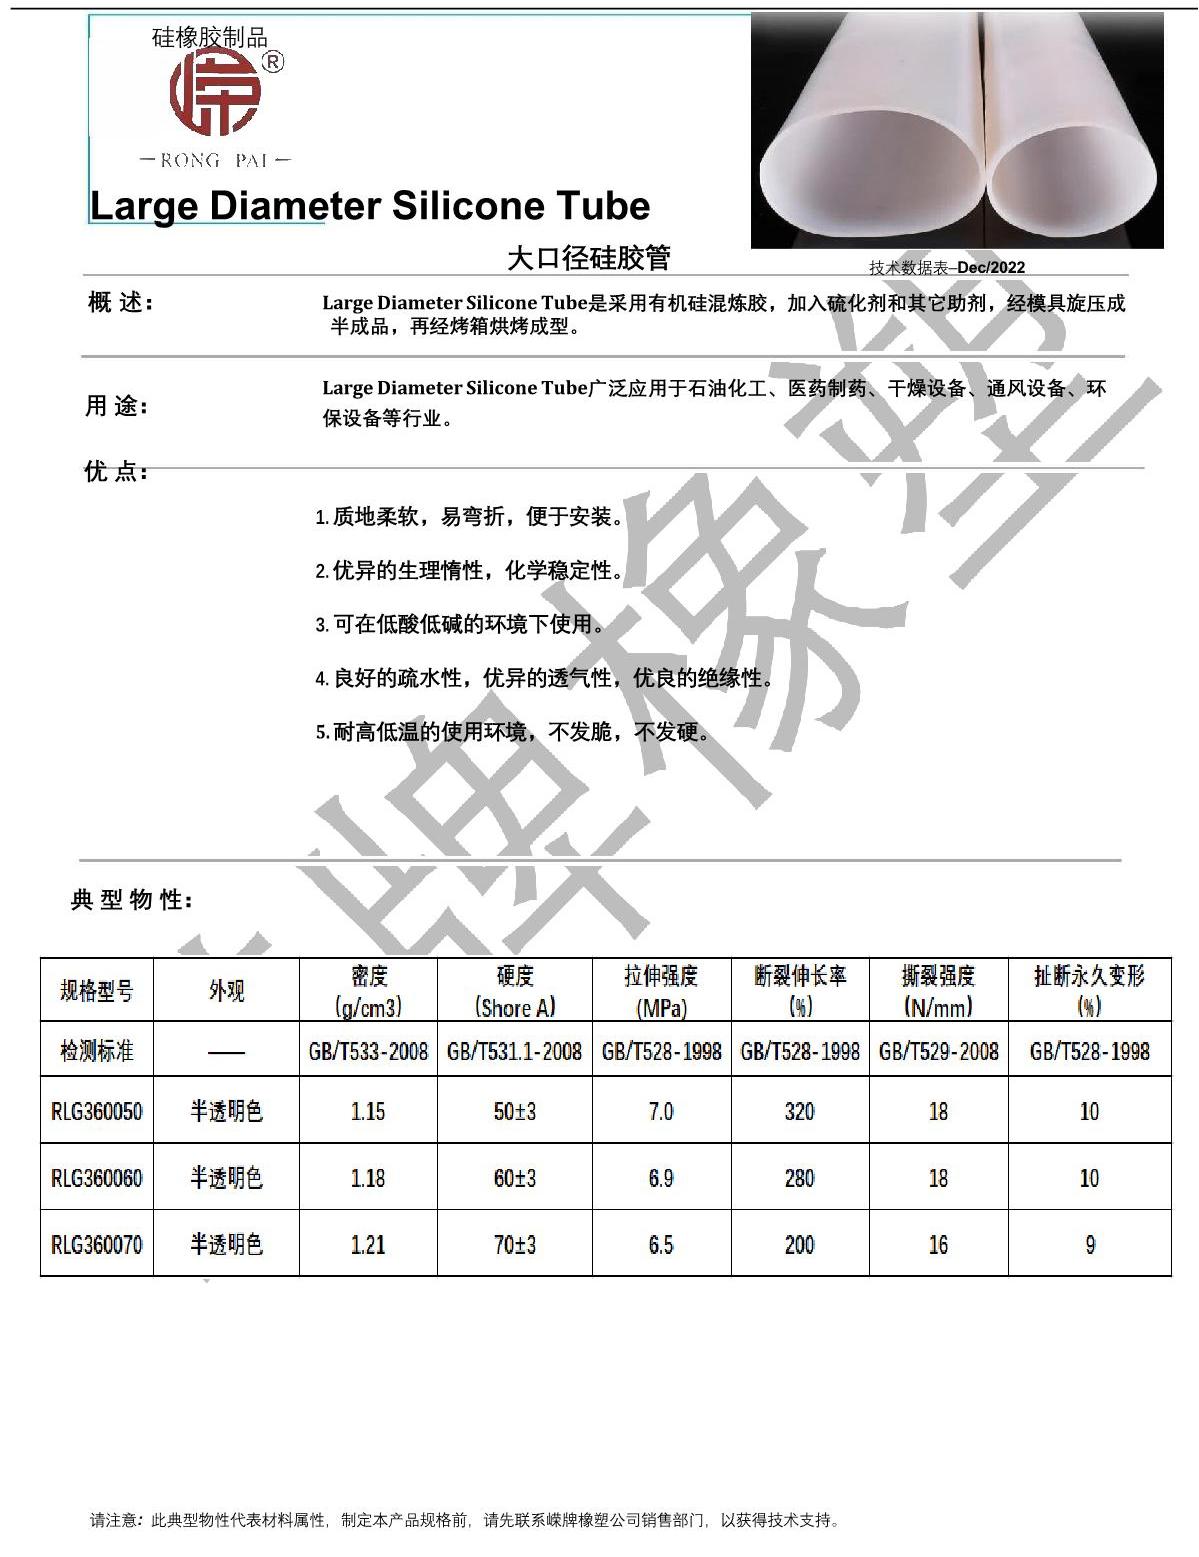 大口径硅胶管产品说明_1.JPG